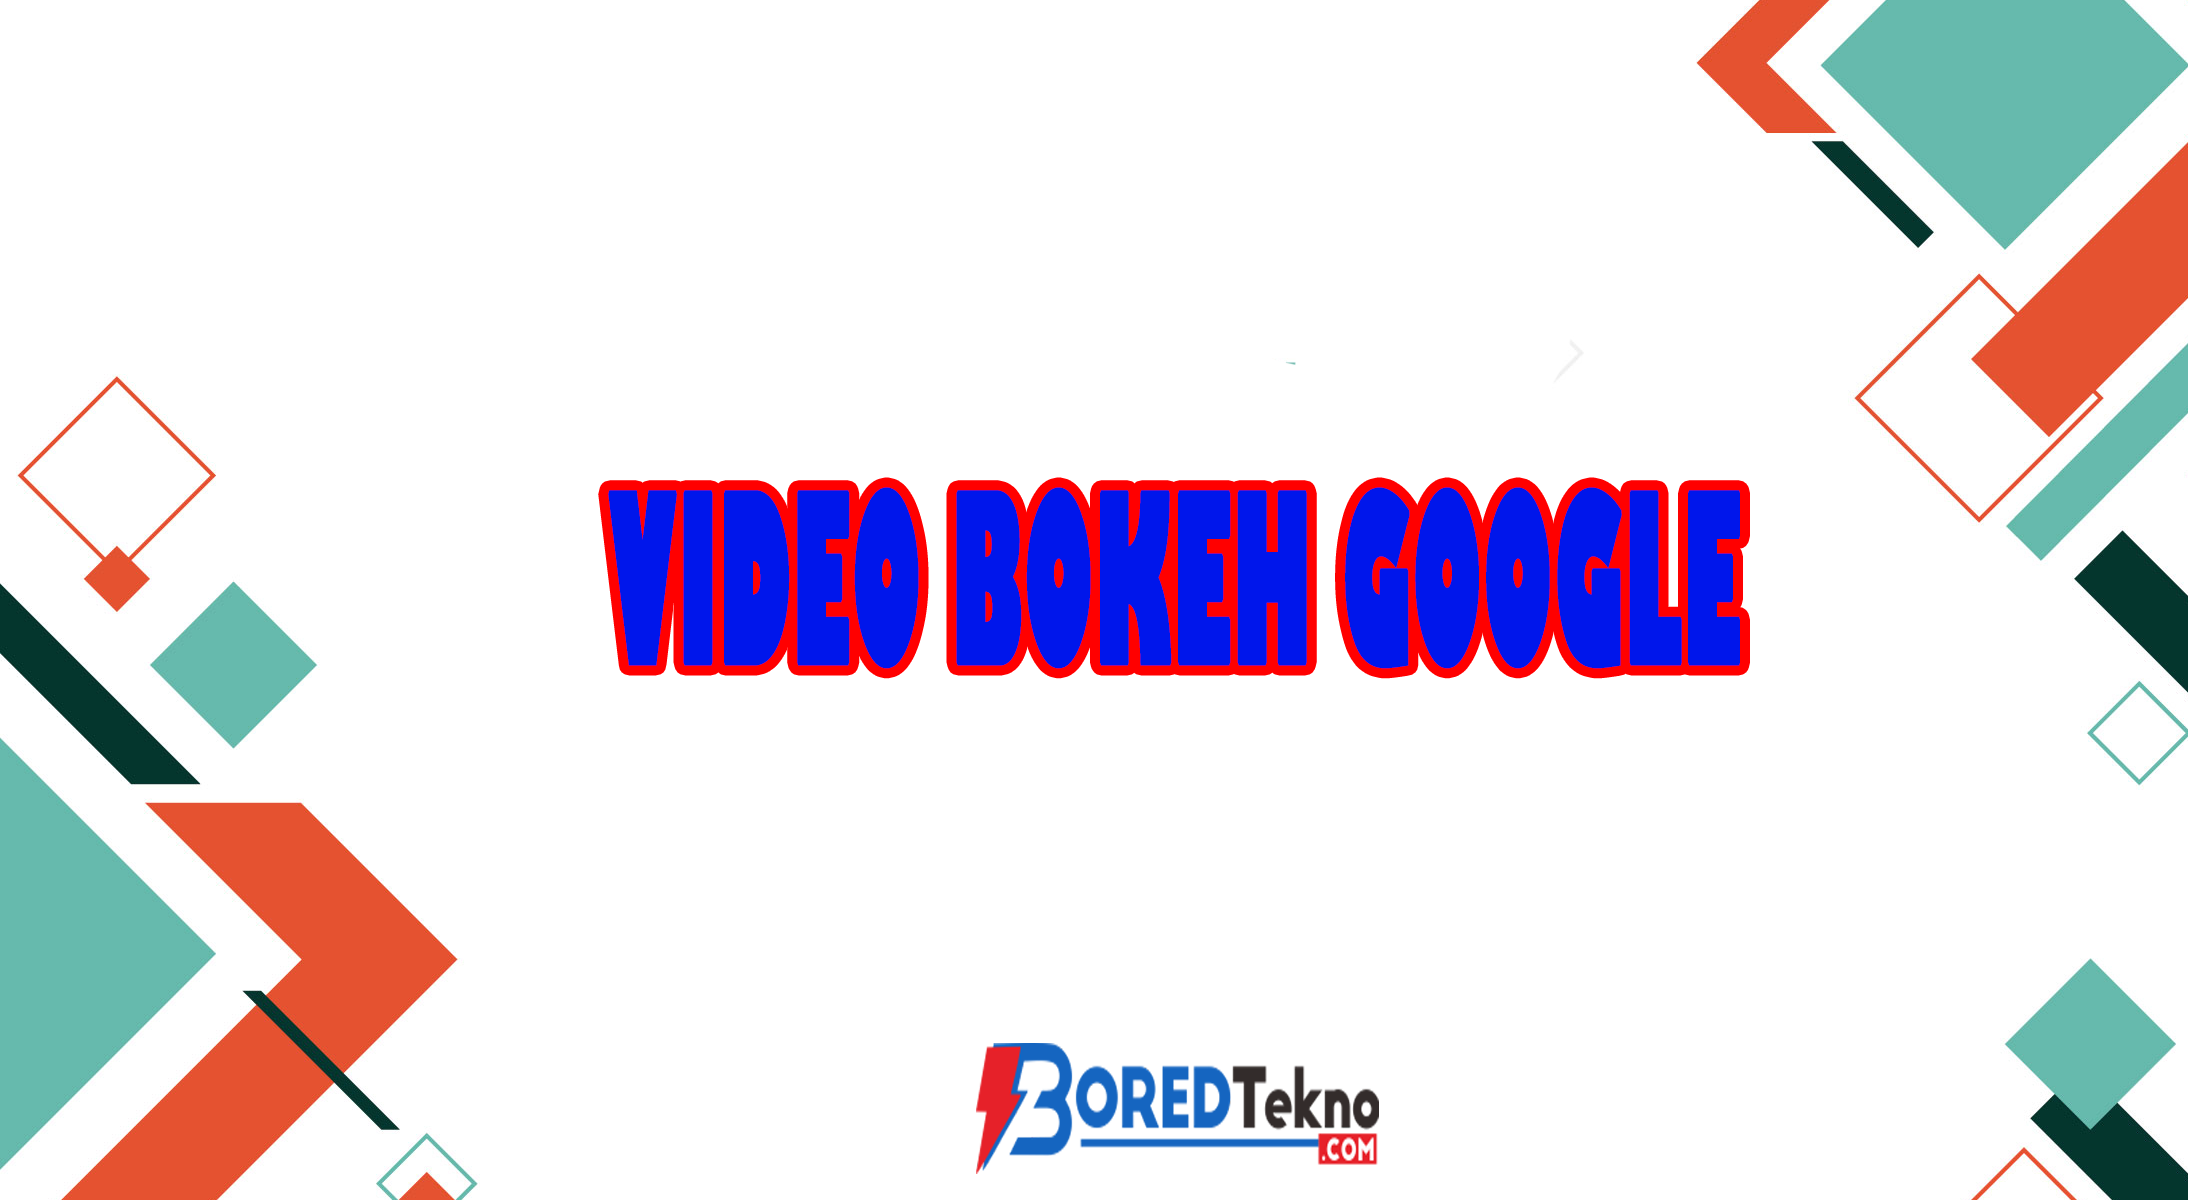 Video Bokeh Google